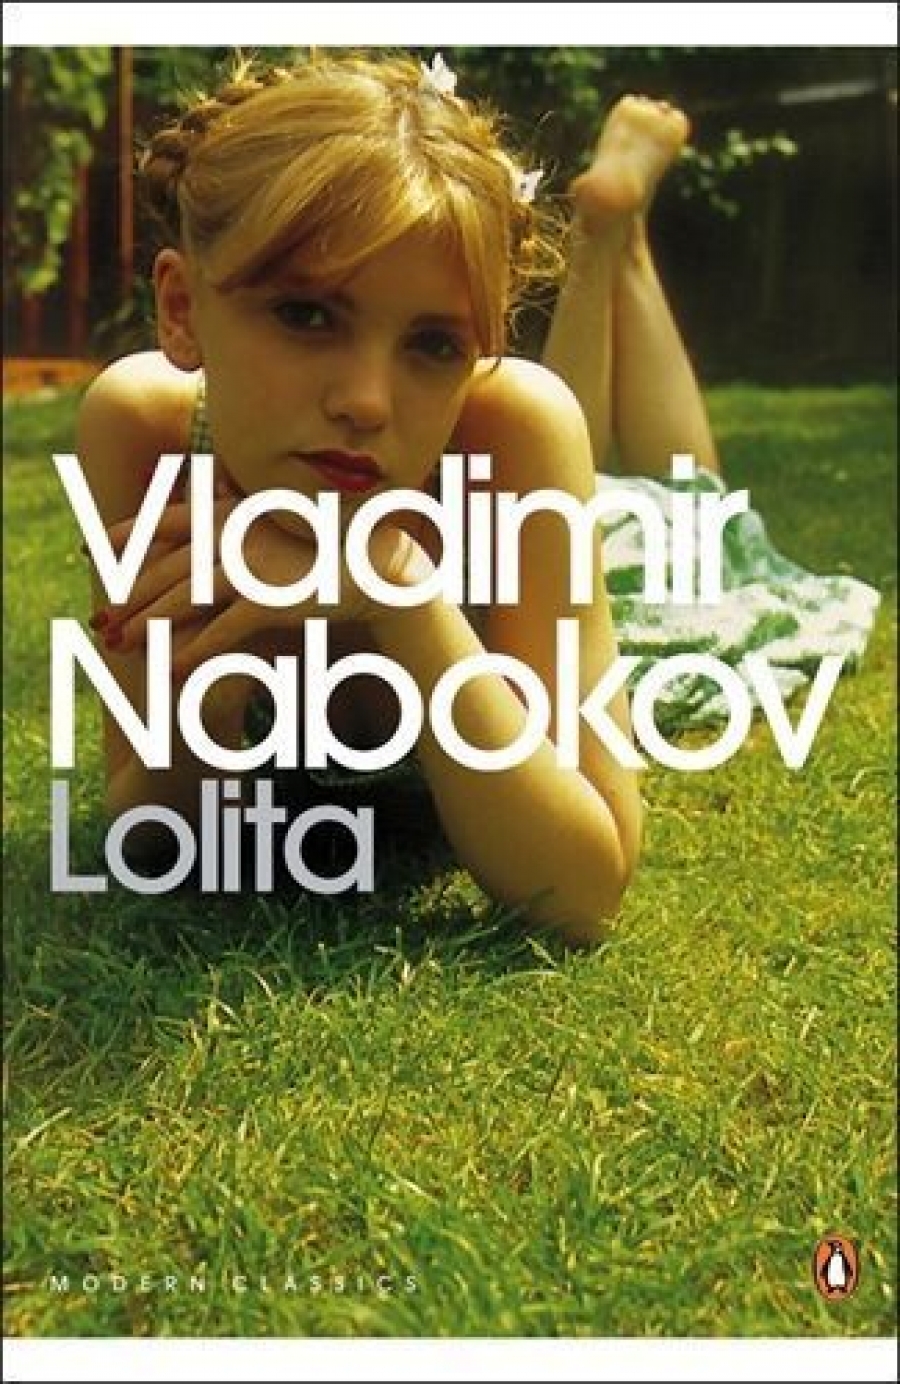 Nabokov V. Lolita 